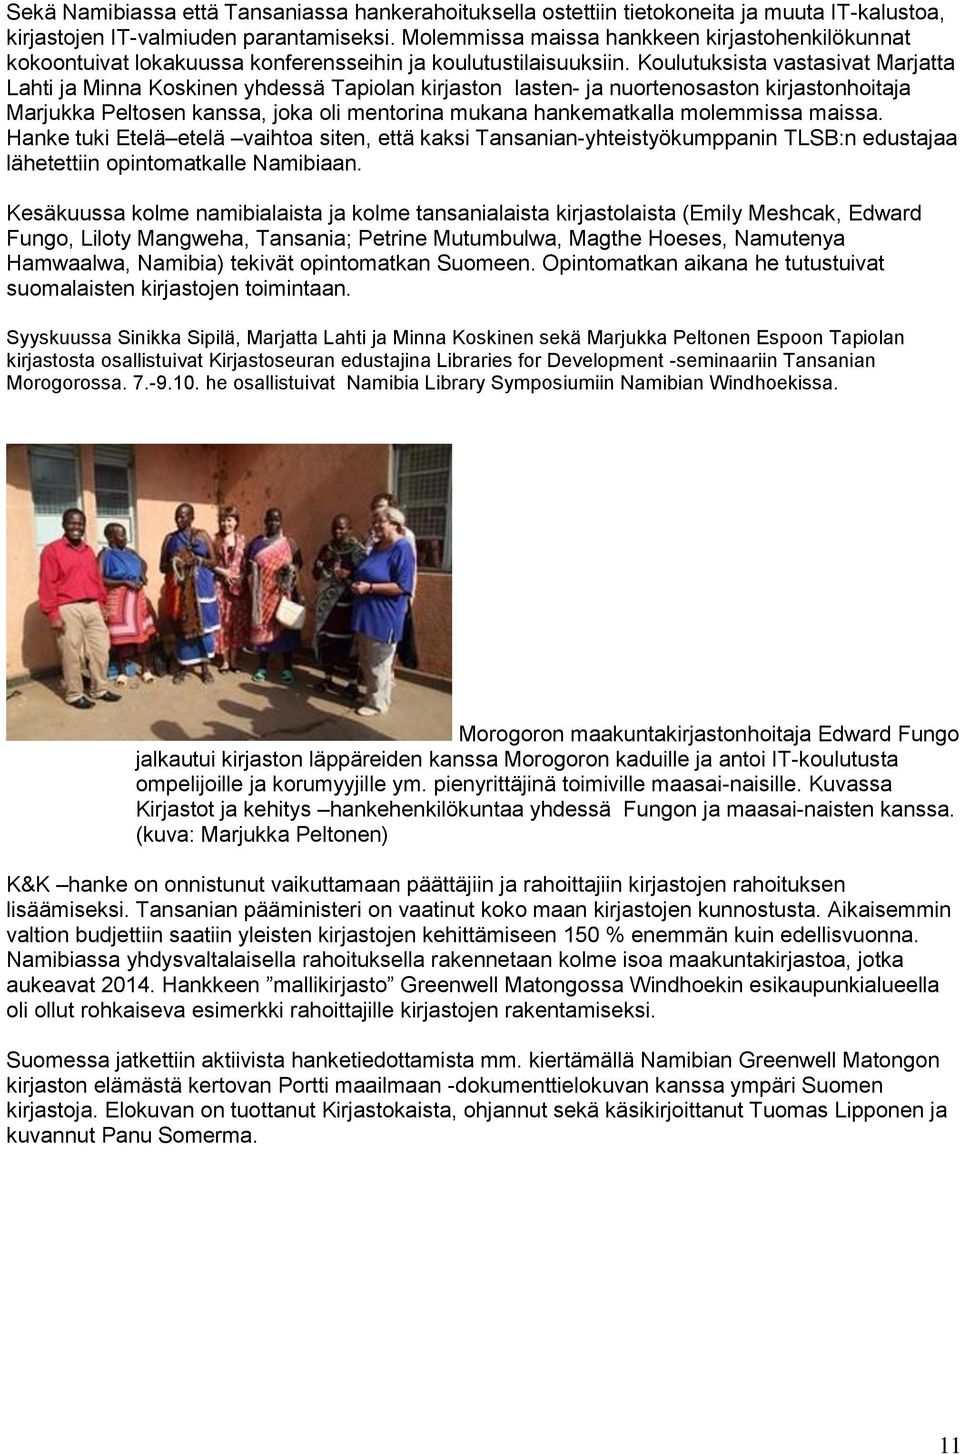 Koulutuksista vastasivat Marjatta Lahti ja Minna Koskinen yhdessä Tapiolan kirjaston lasten- ja nuortenosaston kirjastonhoitaja Marjukka Peltosen kanssa, joka oli mentorina mukana hankematkalla